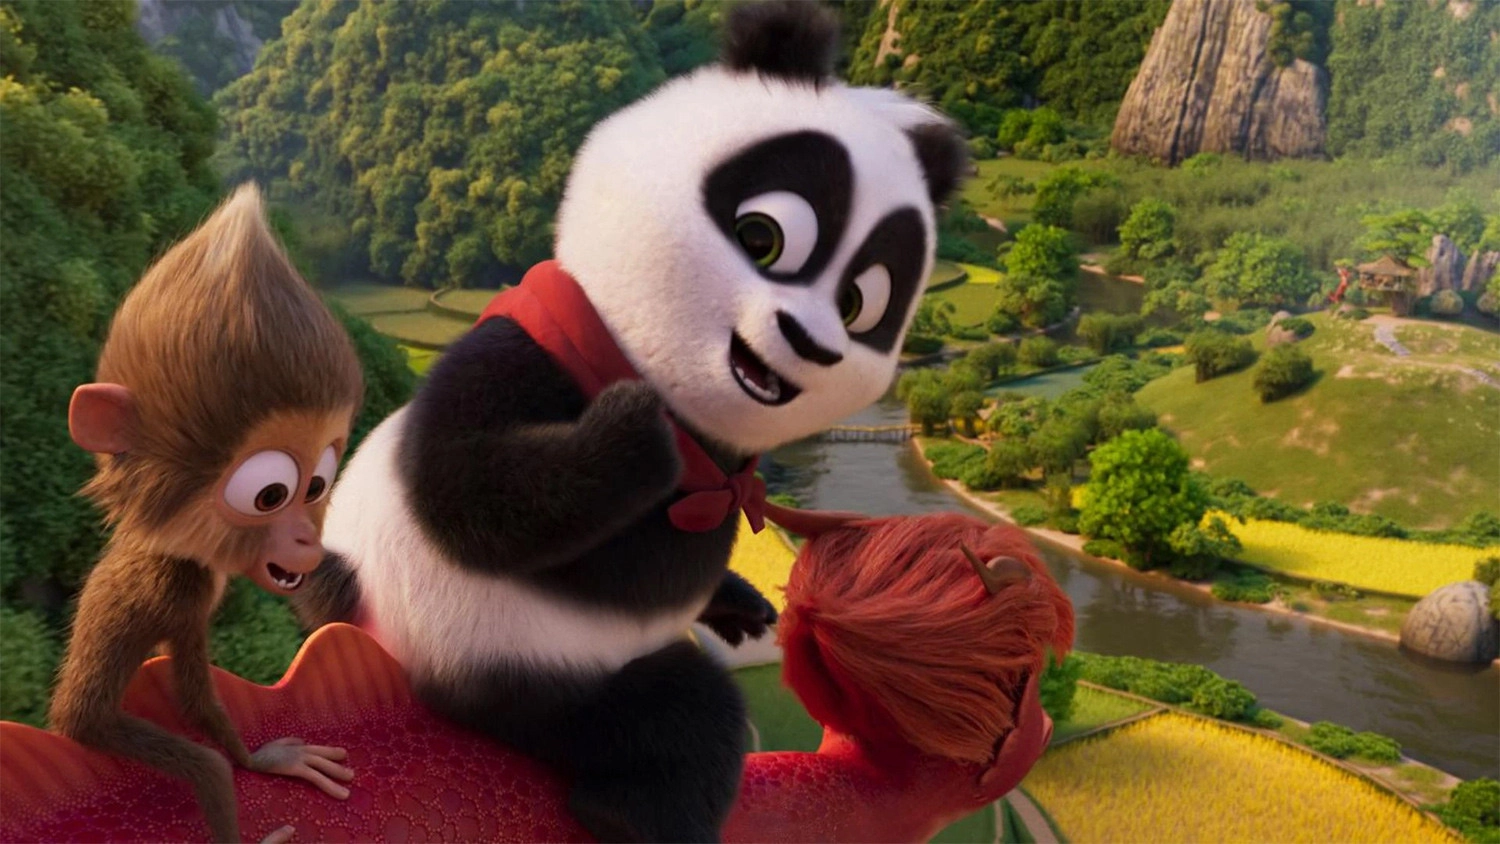 Review phim Panda Đại Náo Lãnh Địa Vua Sư Tử, Nội dung phim Panda Đại Náo Lãnh Địa Vua Sư Tử